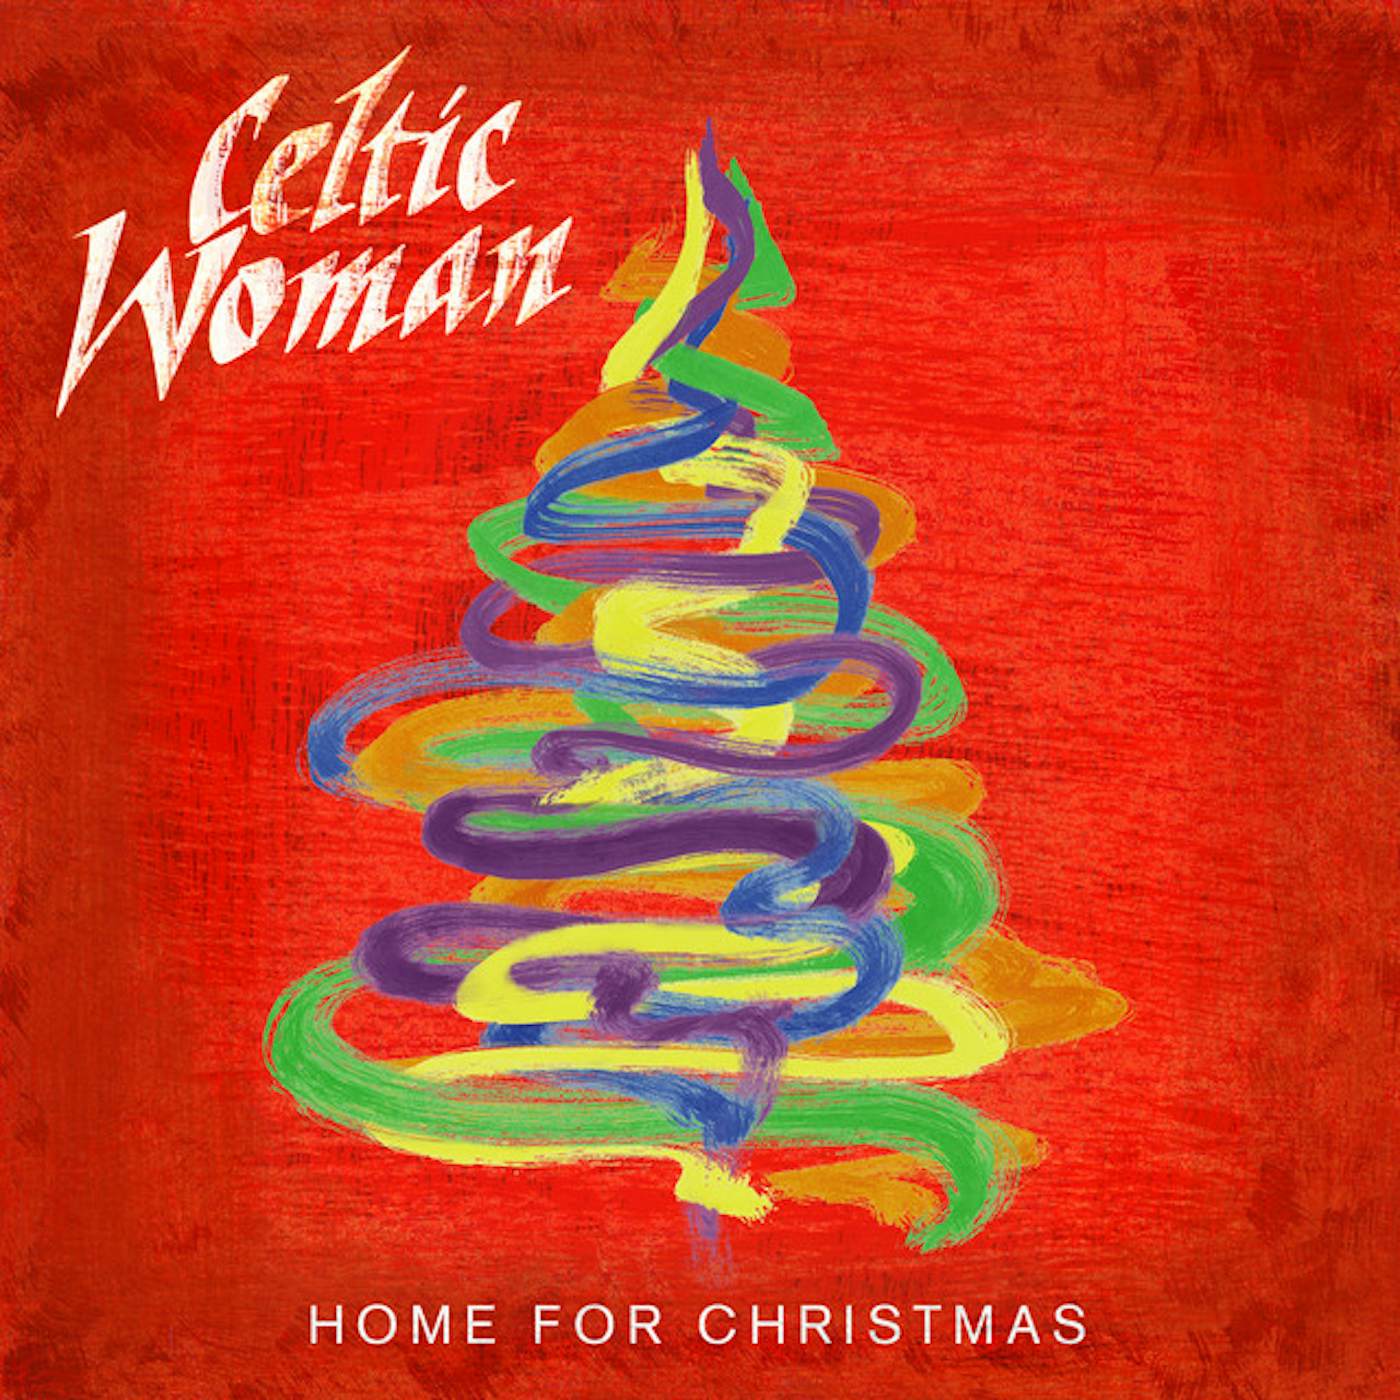 Celtic Woman HOME FOR CHRISTMAS CD